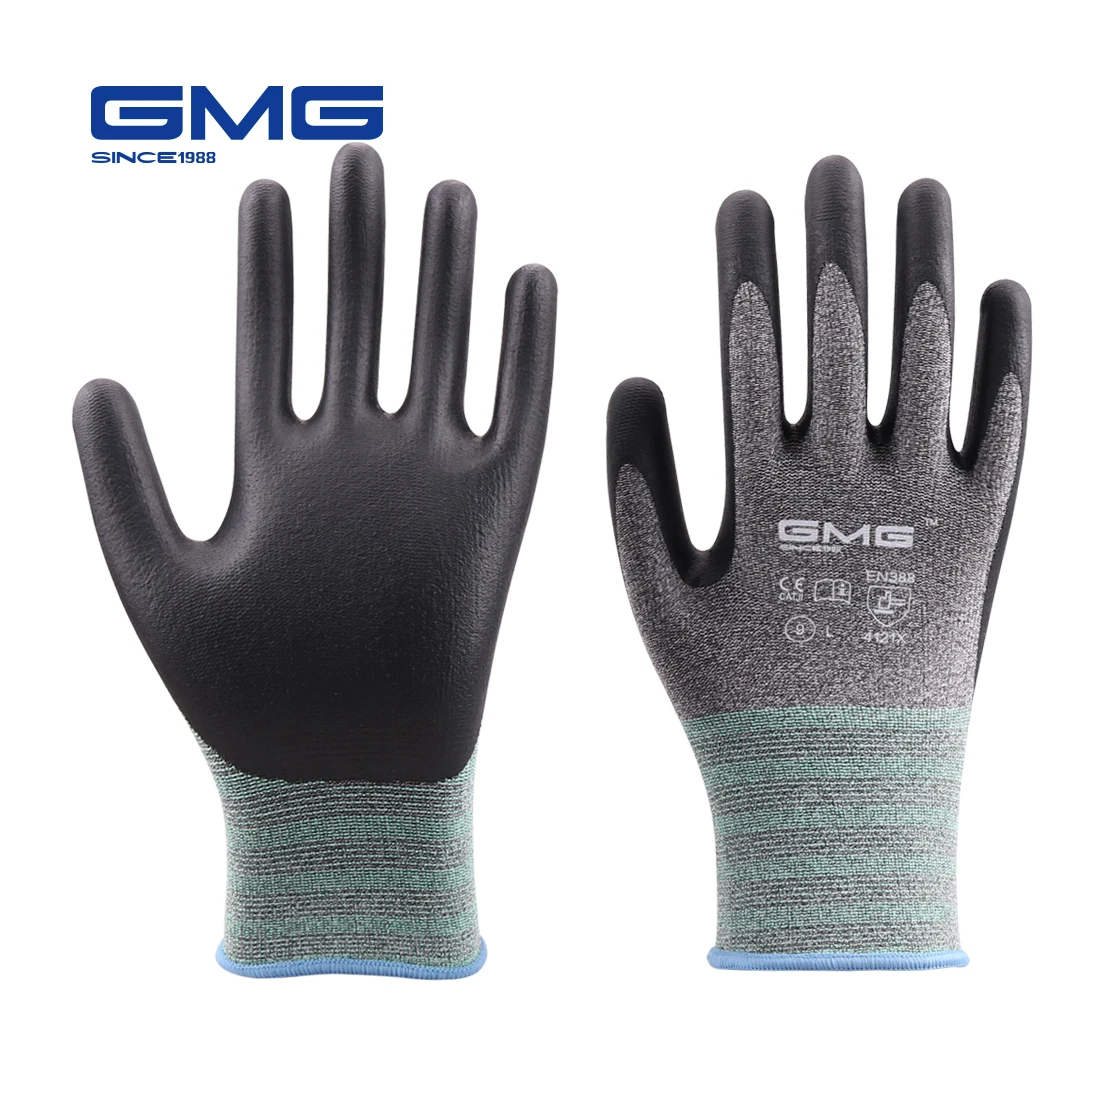 

Hot Sales 3 Pairs Work Gloves GMG Safety Garden Mechanic Protective Gloves Women Men Gloves Nitrile Safety Working Glove Gloves